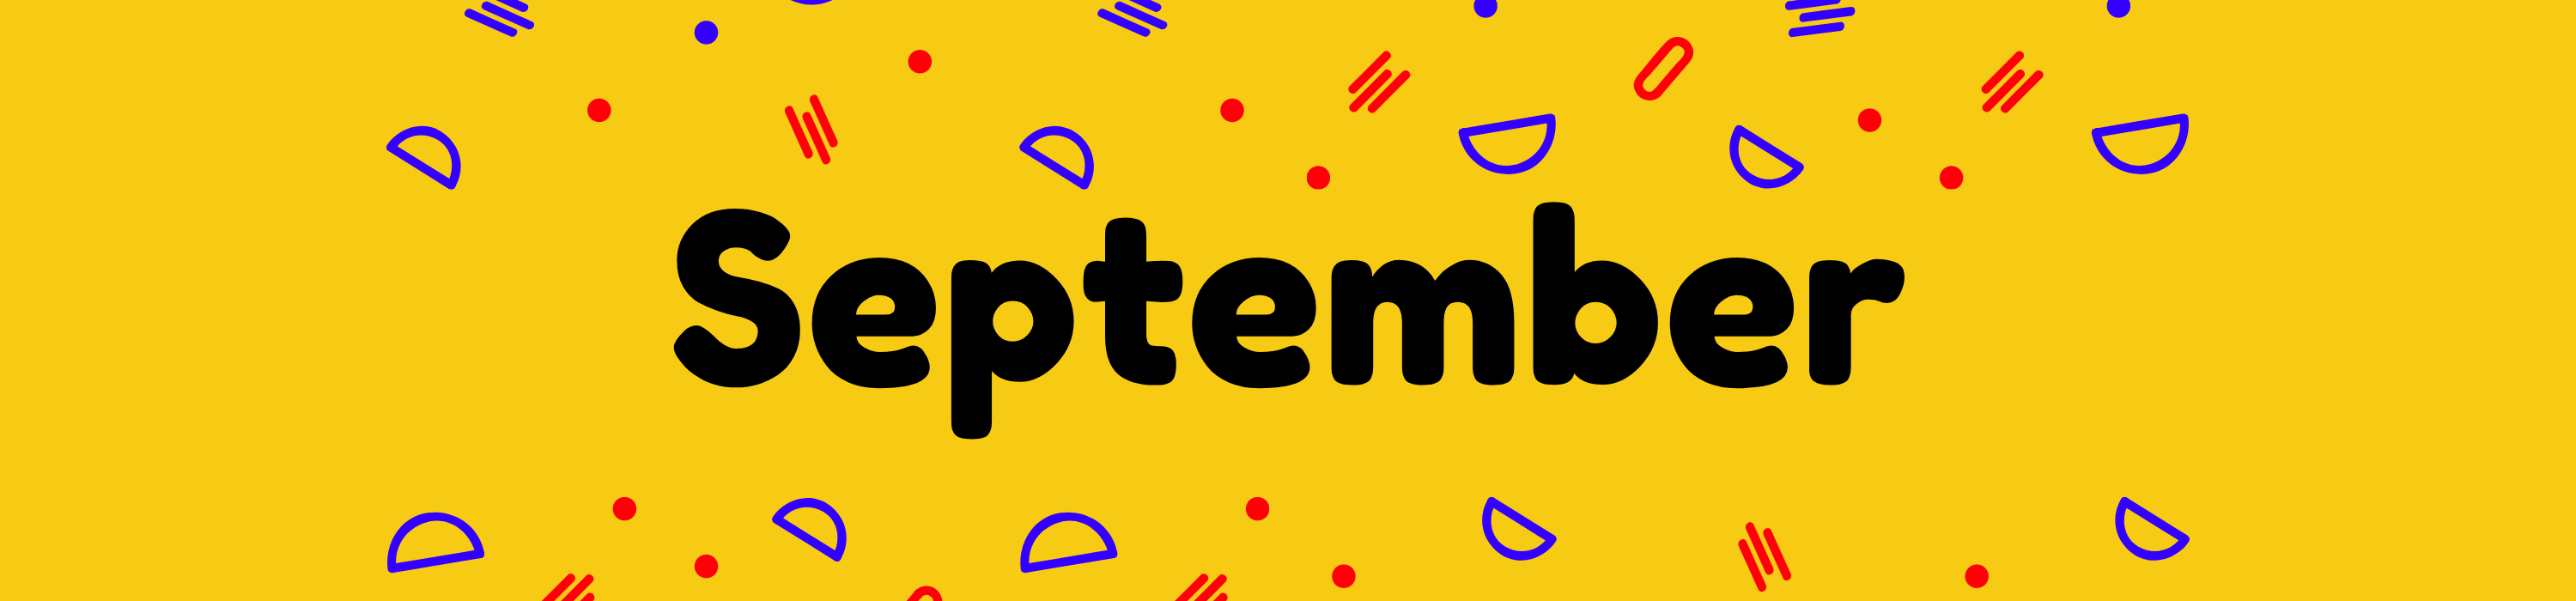 September-banner